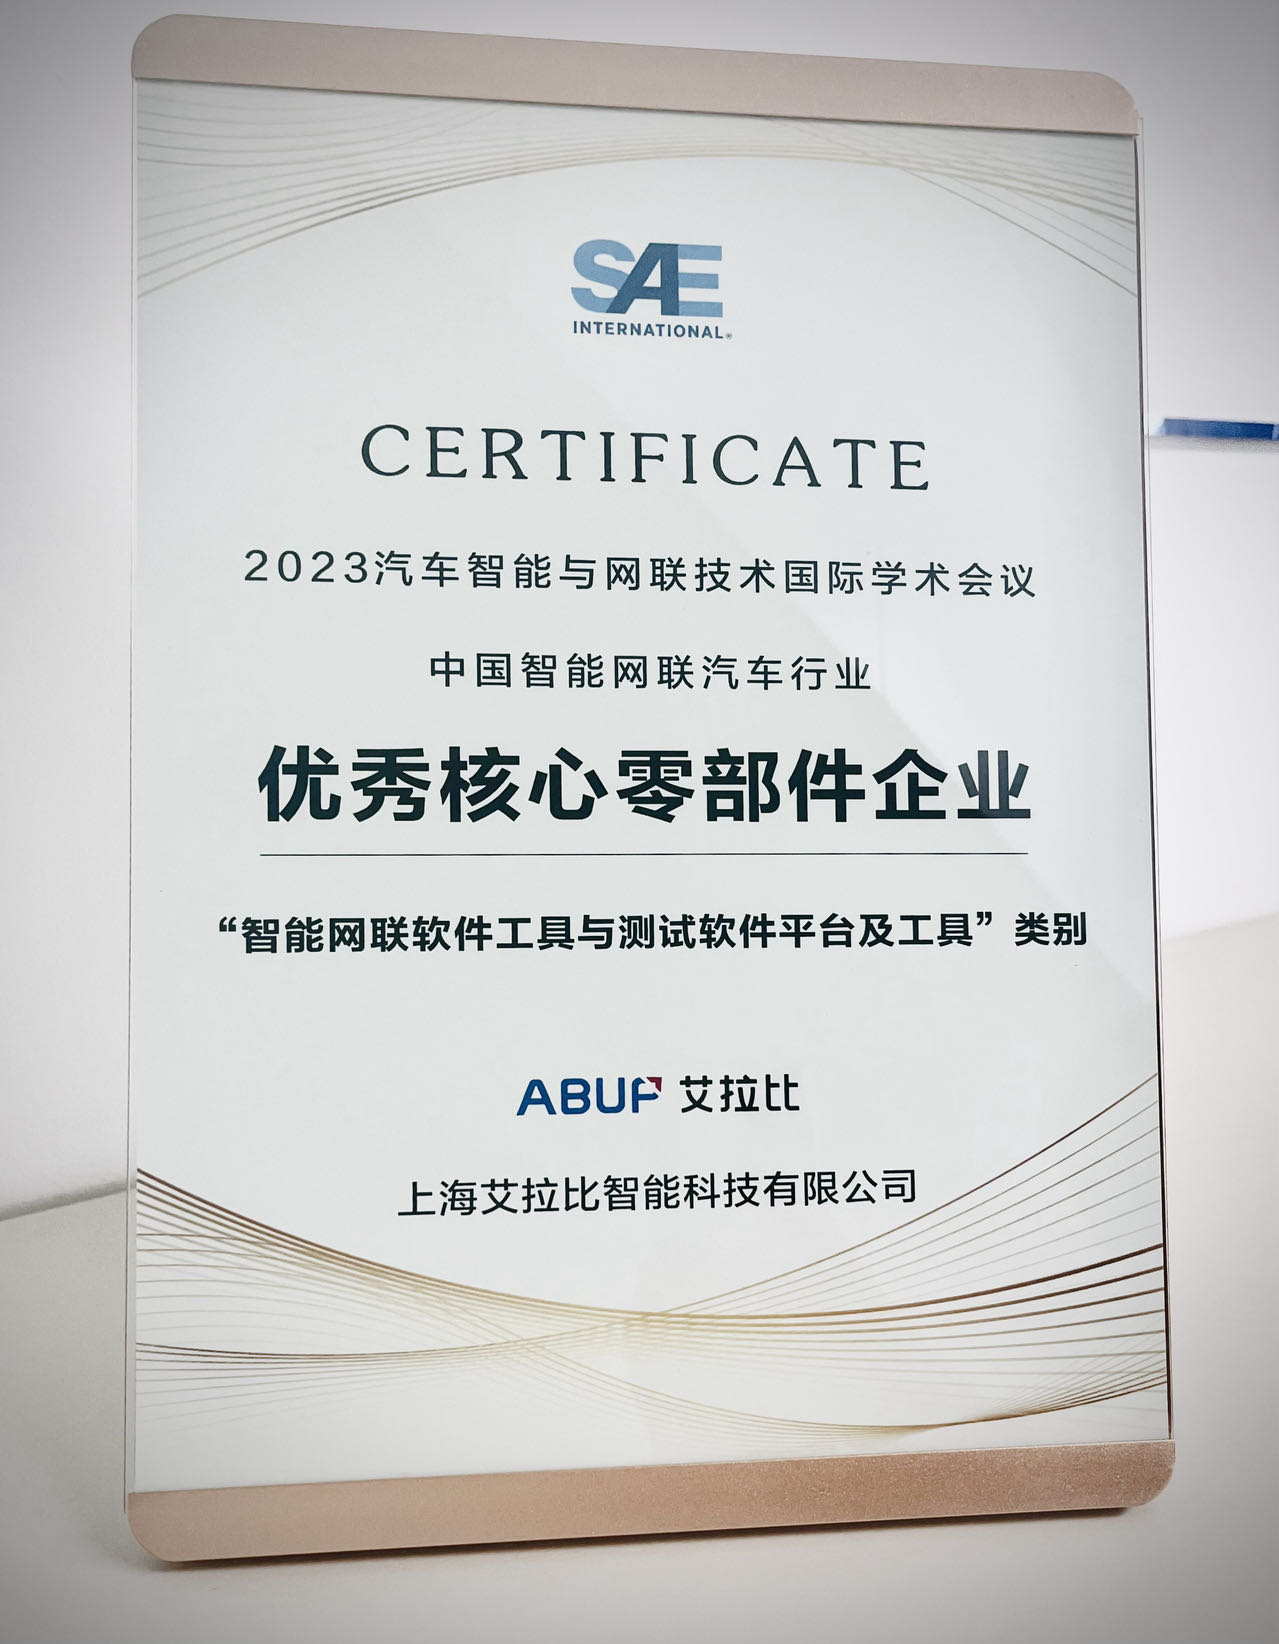 艾拉比獲評中國智能網聯汽車行業優秀核心零部件企業